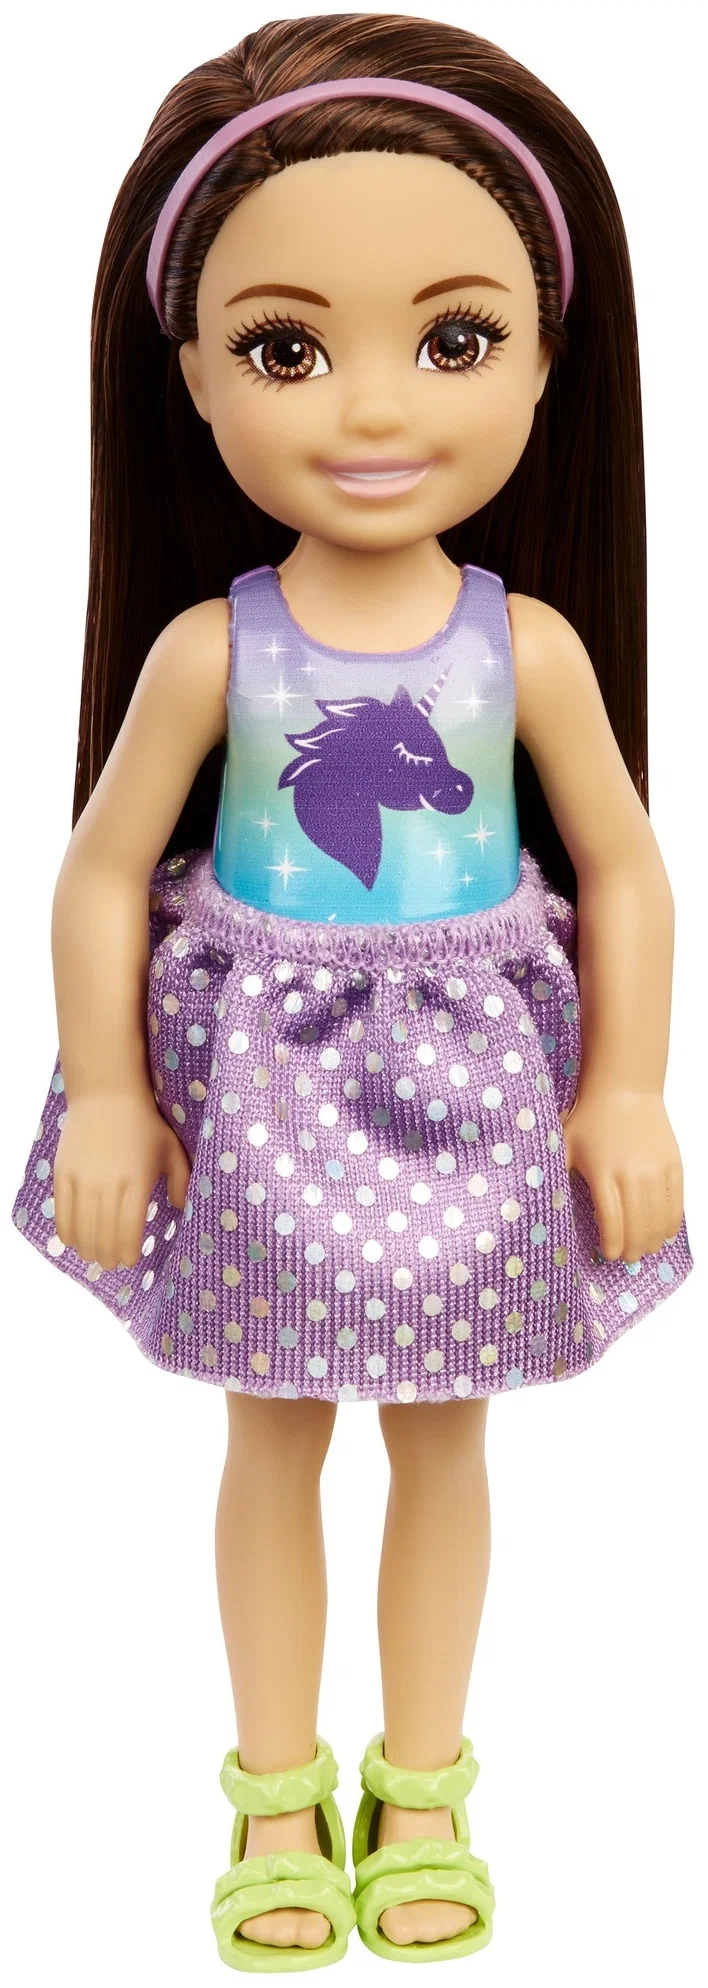 Кукла Barbie Семья Челси, DWJ33 брюнетка с единорогом